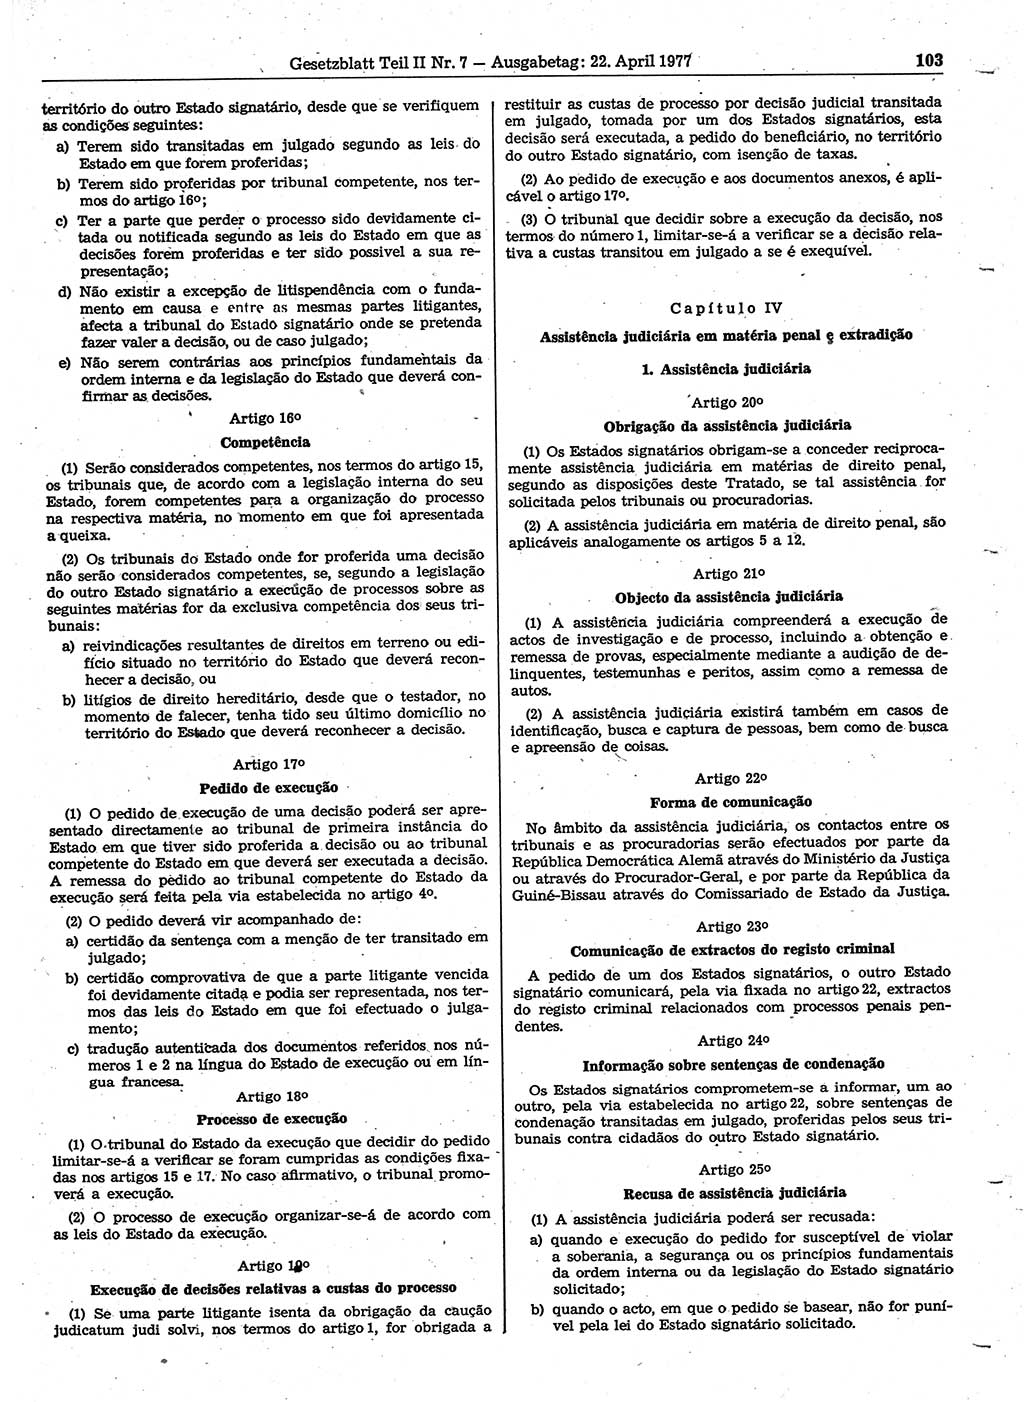 Gesetzblatt (GBl.) der Deutschen Demokratischen Republik (DDR) Teil ⅠⅠ 1977, Seite 103 (GBl. DDR ⅠⅠ 1977, S. 103)